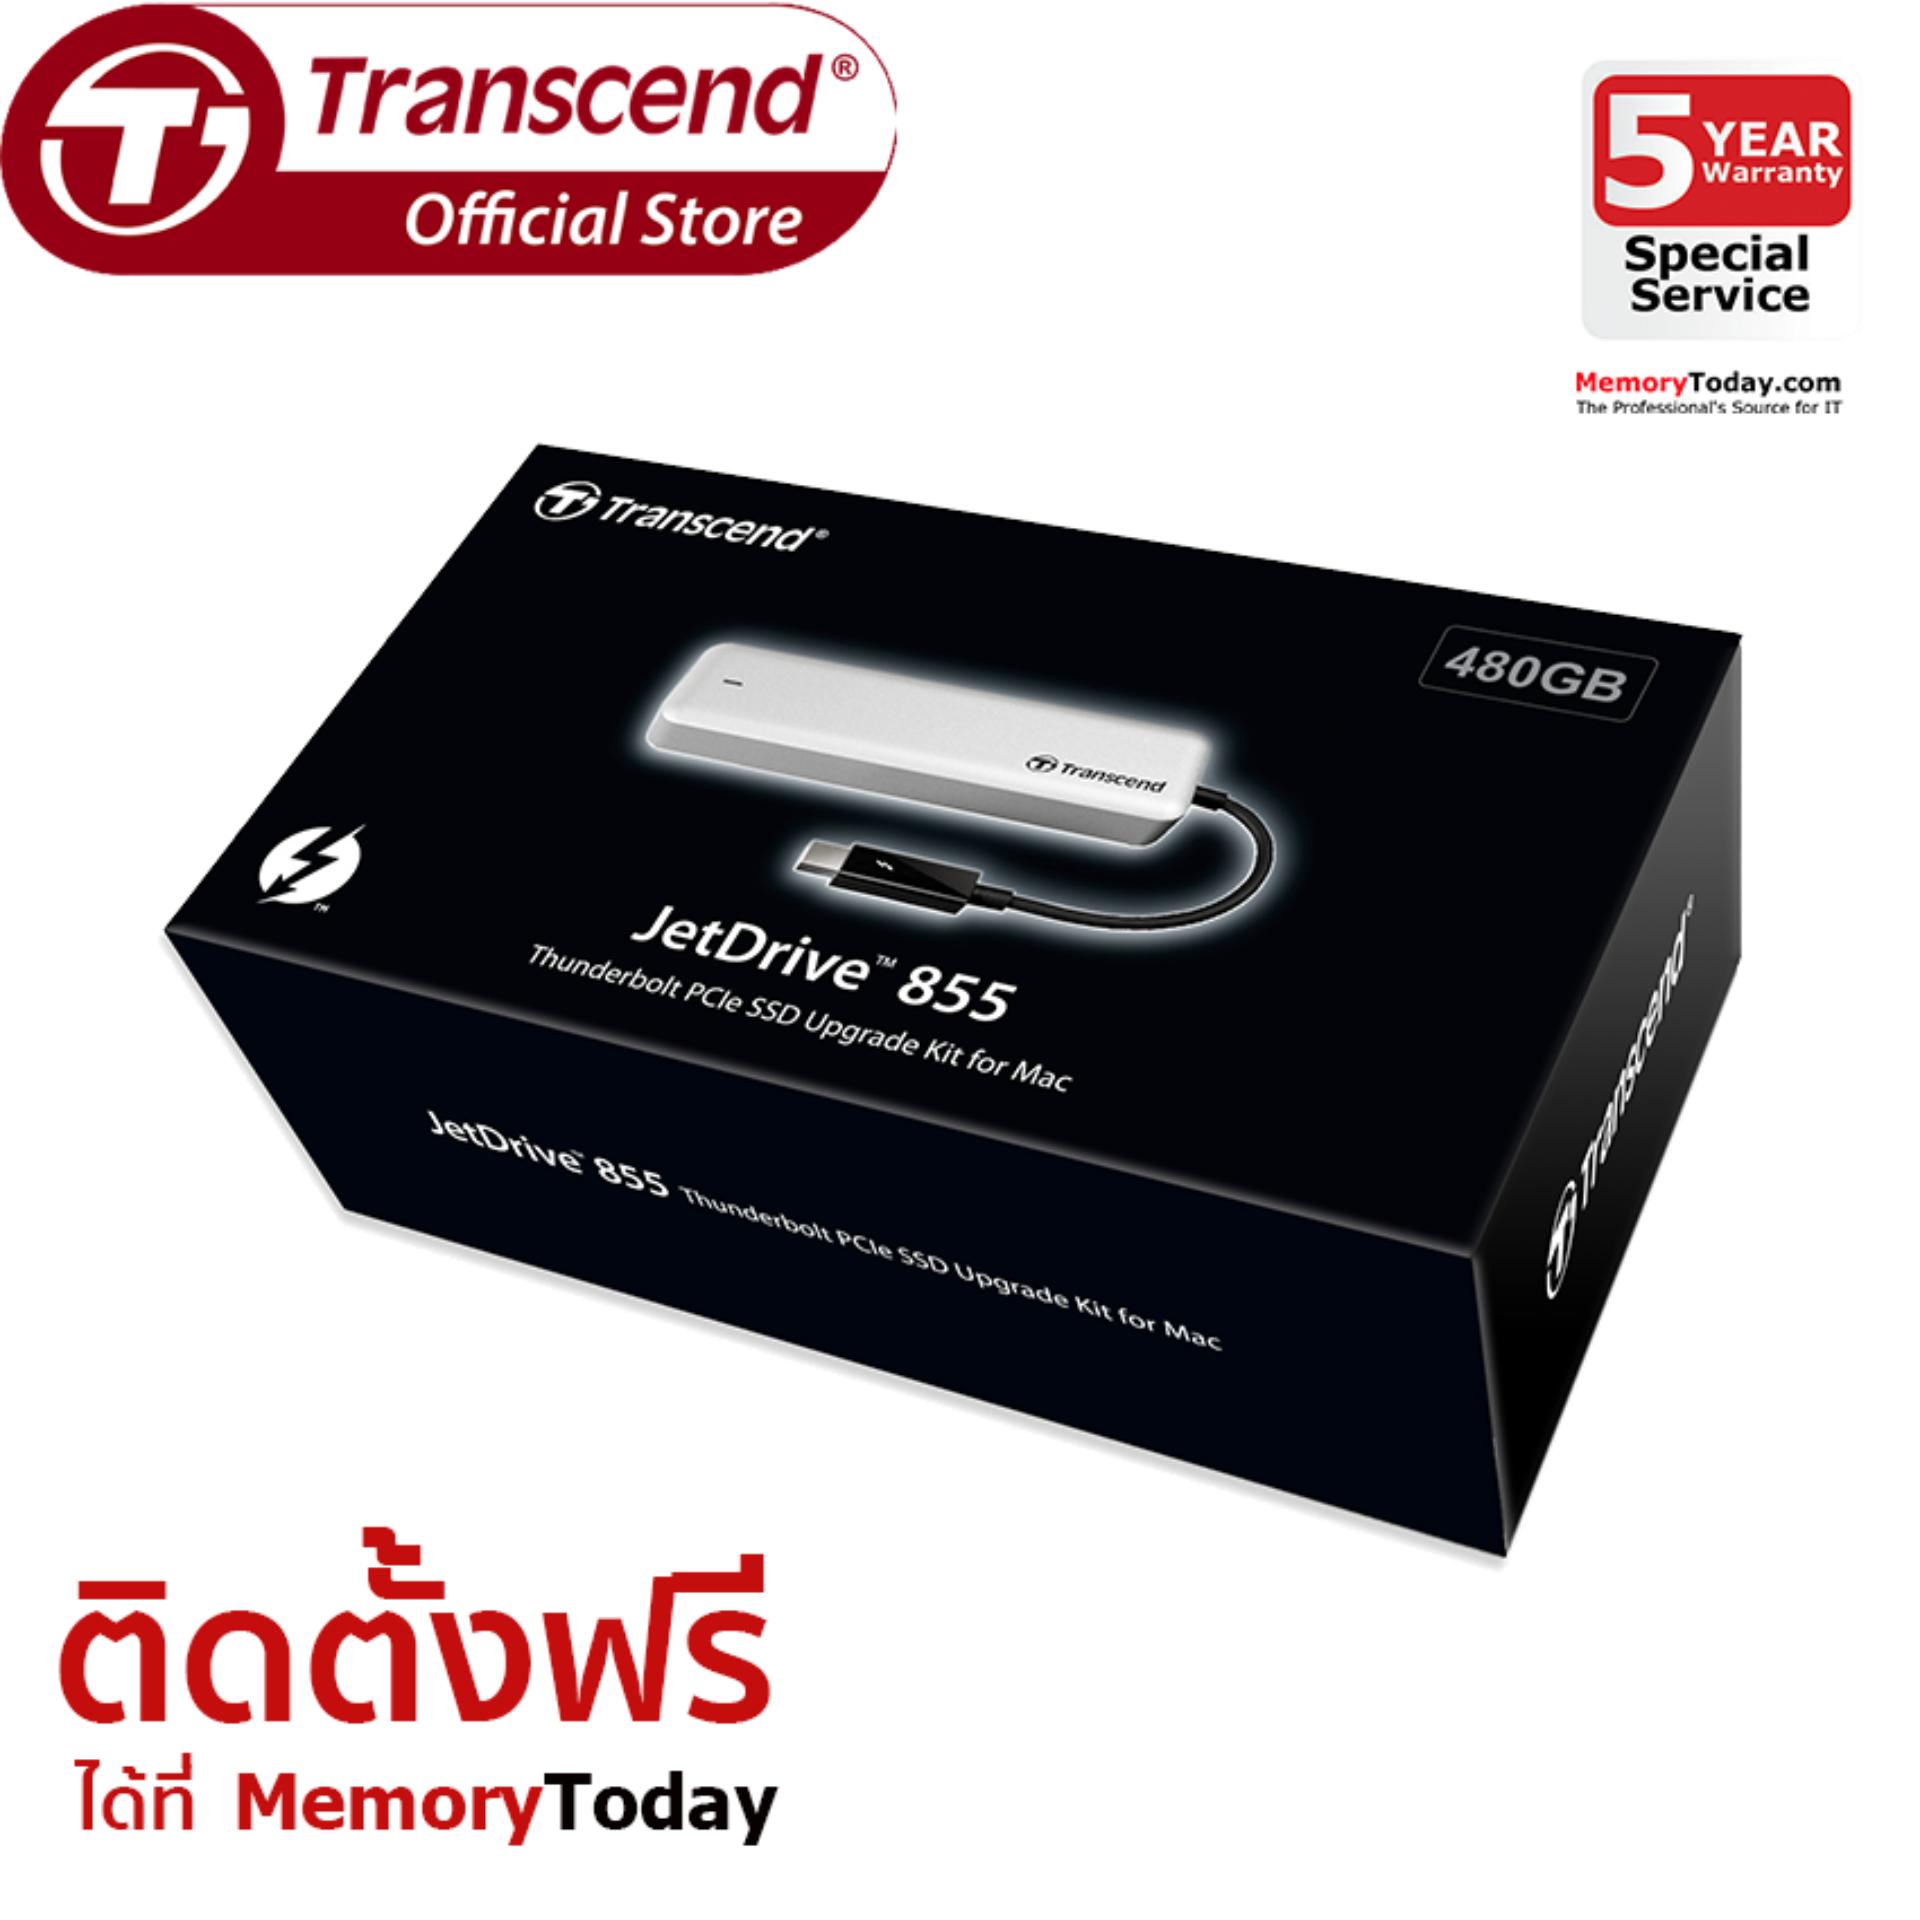 Transcend JetDrive 855 SSD Upgrade Kits for Mac 480GB (TS480GJDM855)